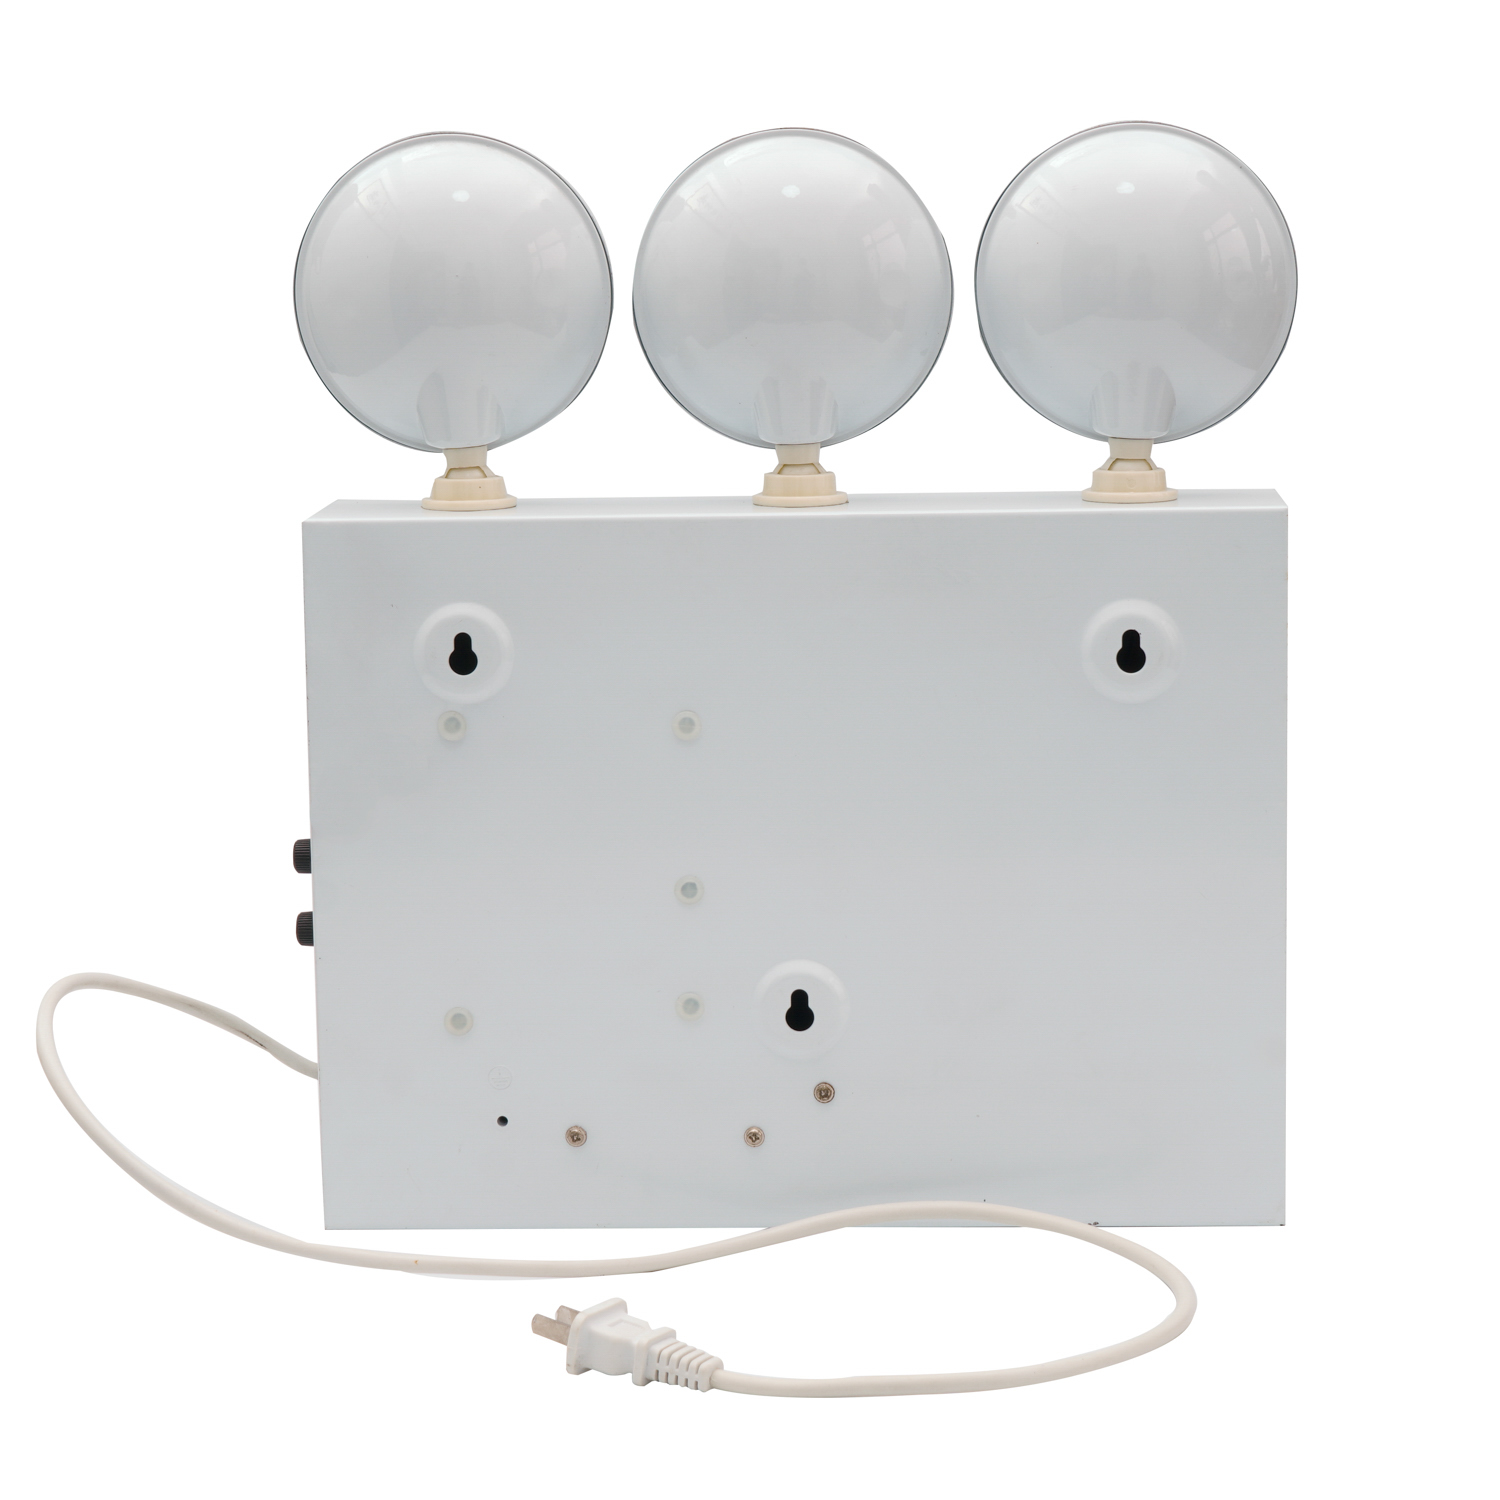 ثلاثة رؤوس للطوارئ مصباح LED أبيض لا يتم صيانته بطارية الرصاص الحمضية القابلة لإعادة الشحن أطوال LED للطوارئ